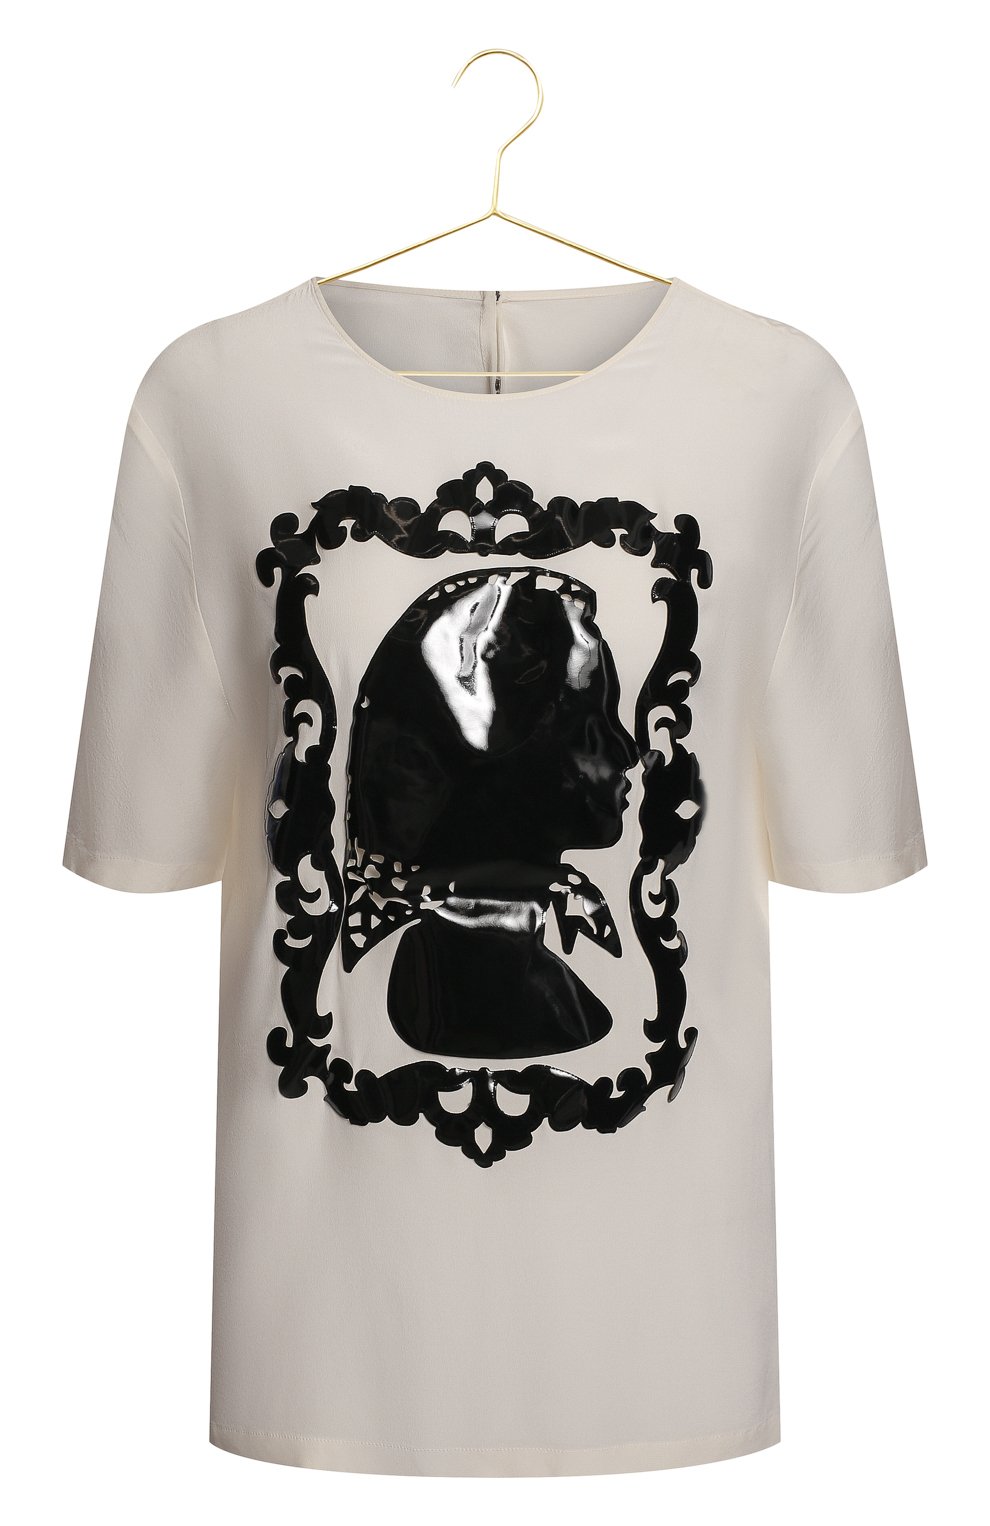 Шелковый топ | Dolce & Gabbana | Чёрно-белый - 1